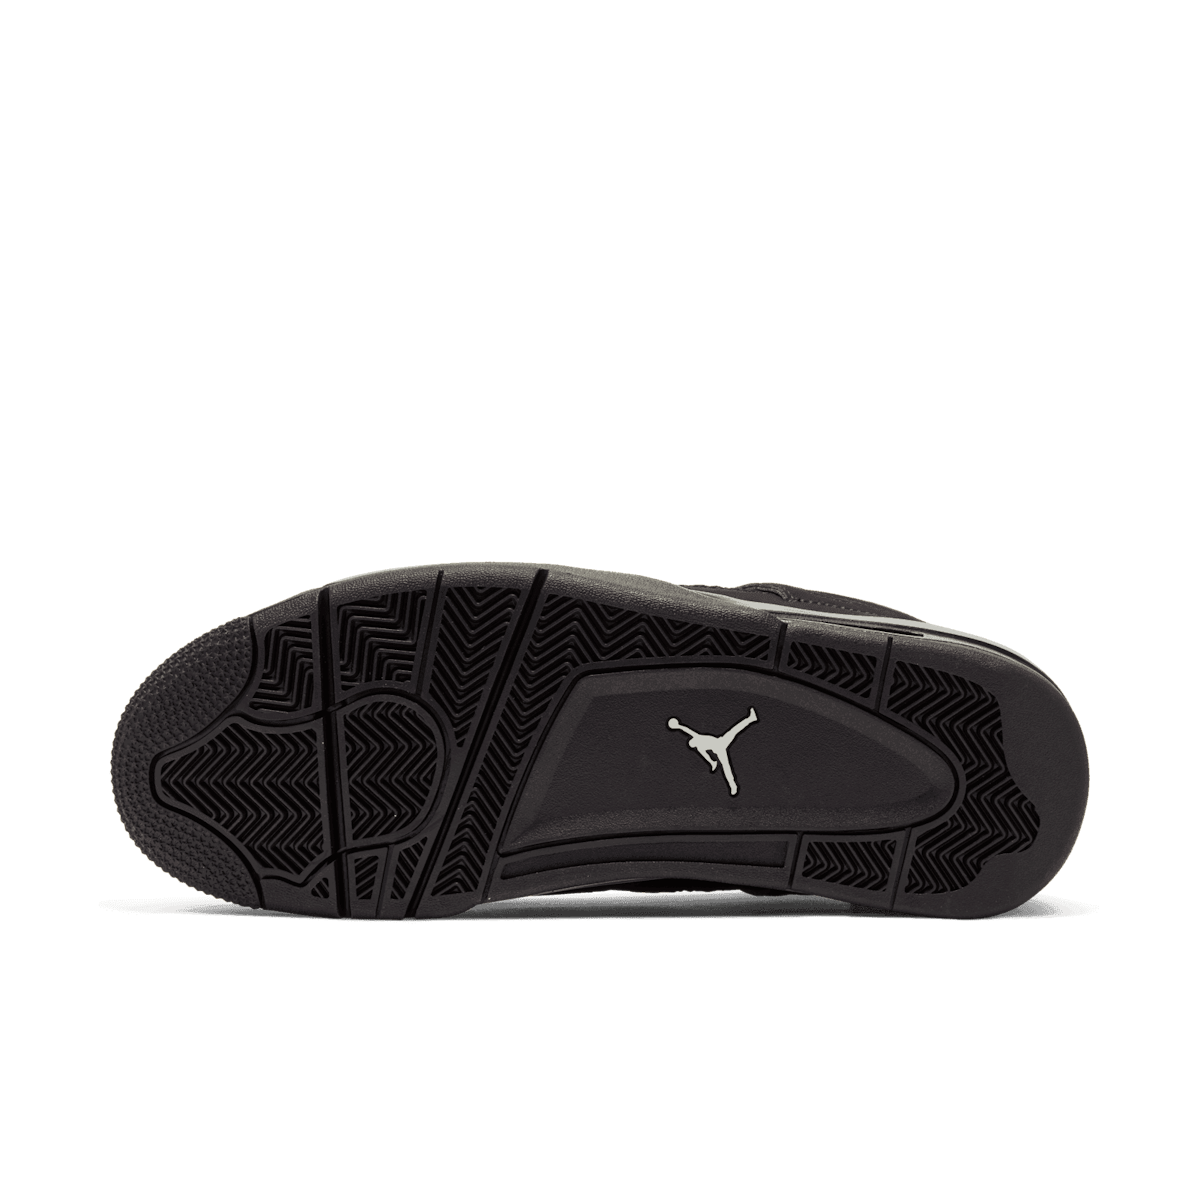 Air Jordan 4 Black Cat (2020) CU1110-010 Release Date